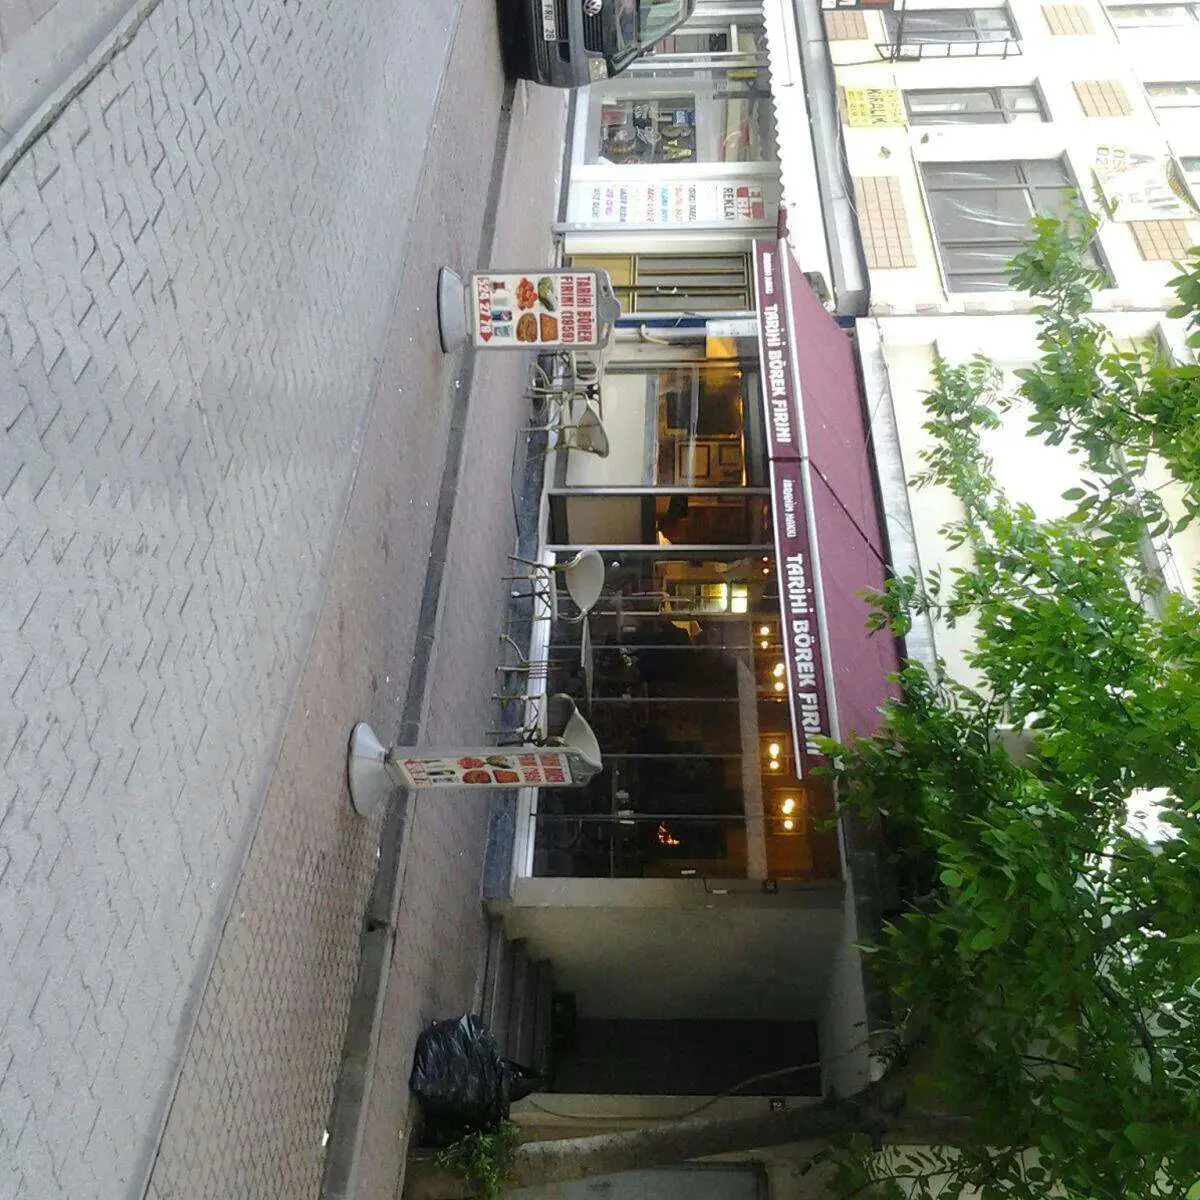 Paşa Hamam Cafe